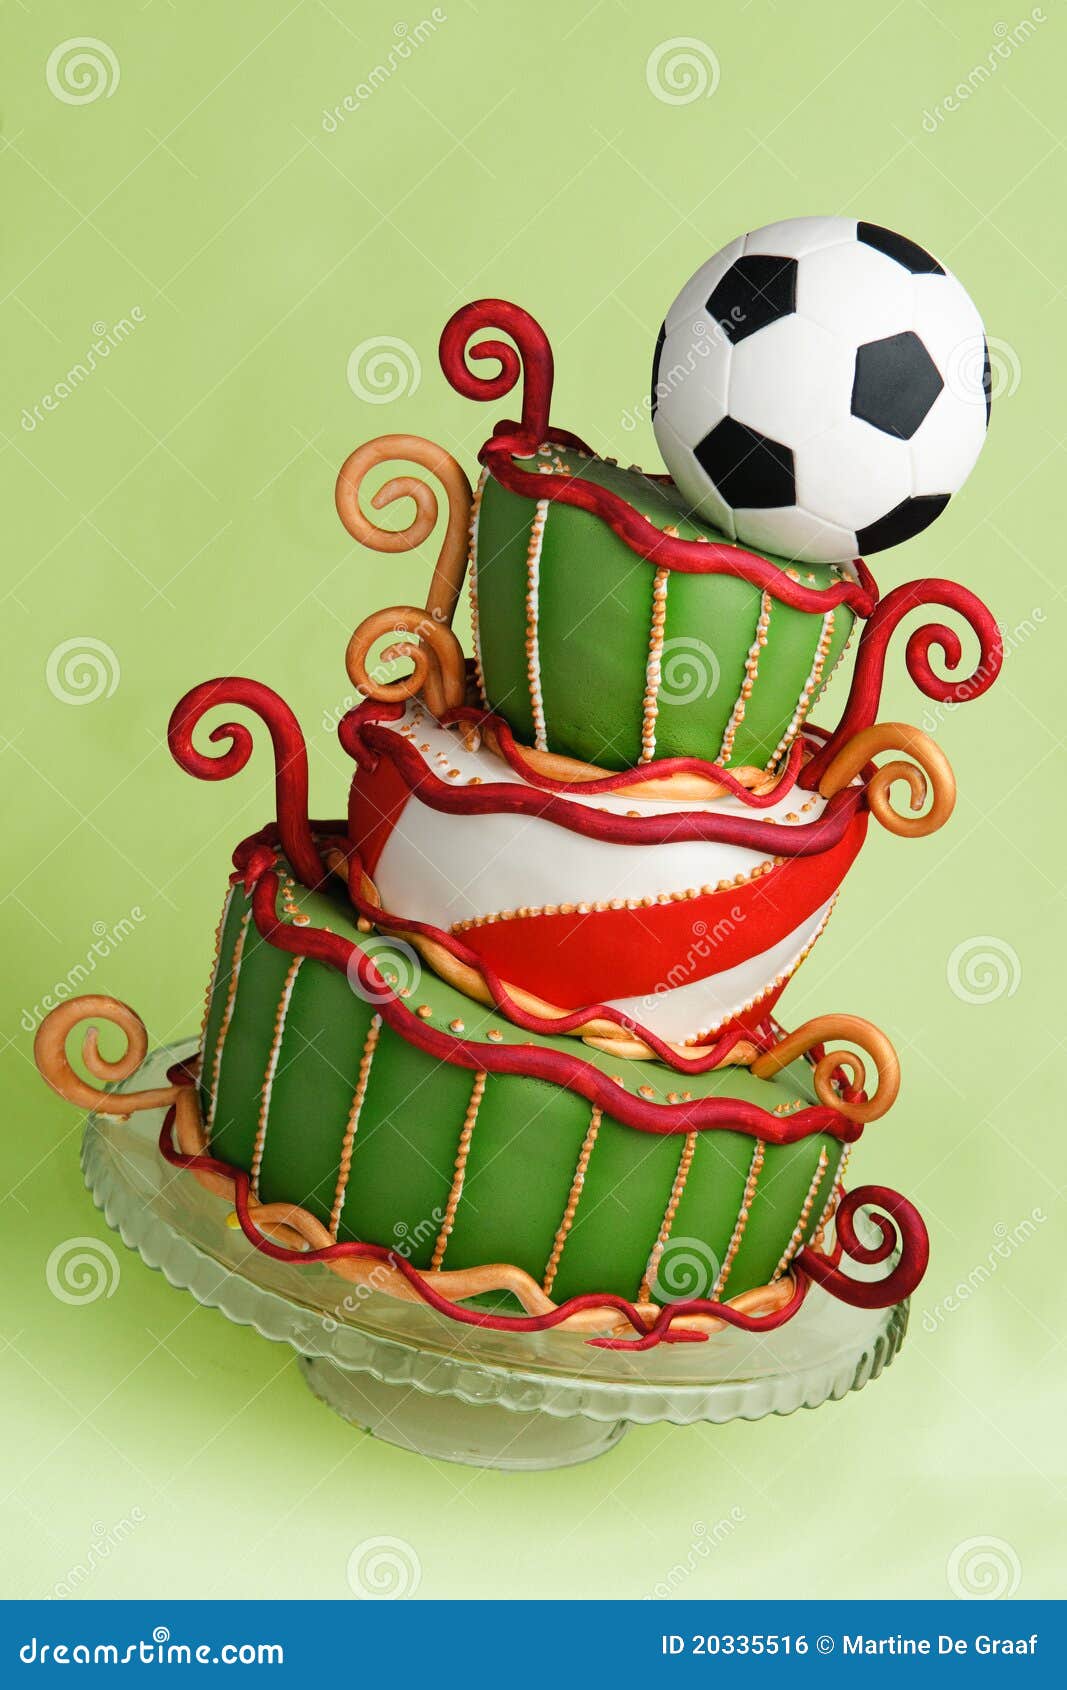 微笑的彩虹: Football Jelly Cake 足球队燕菜生日蛋糕